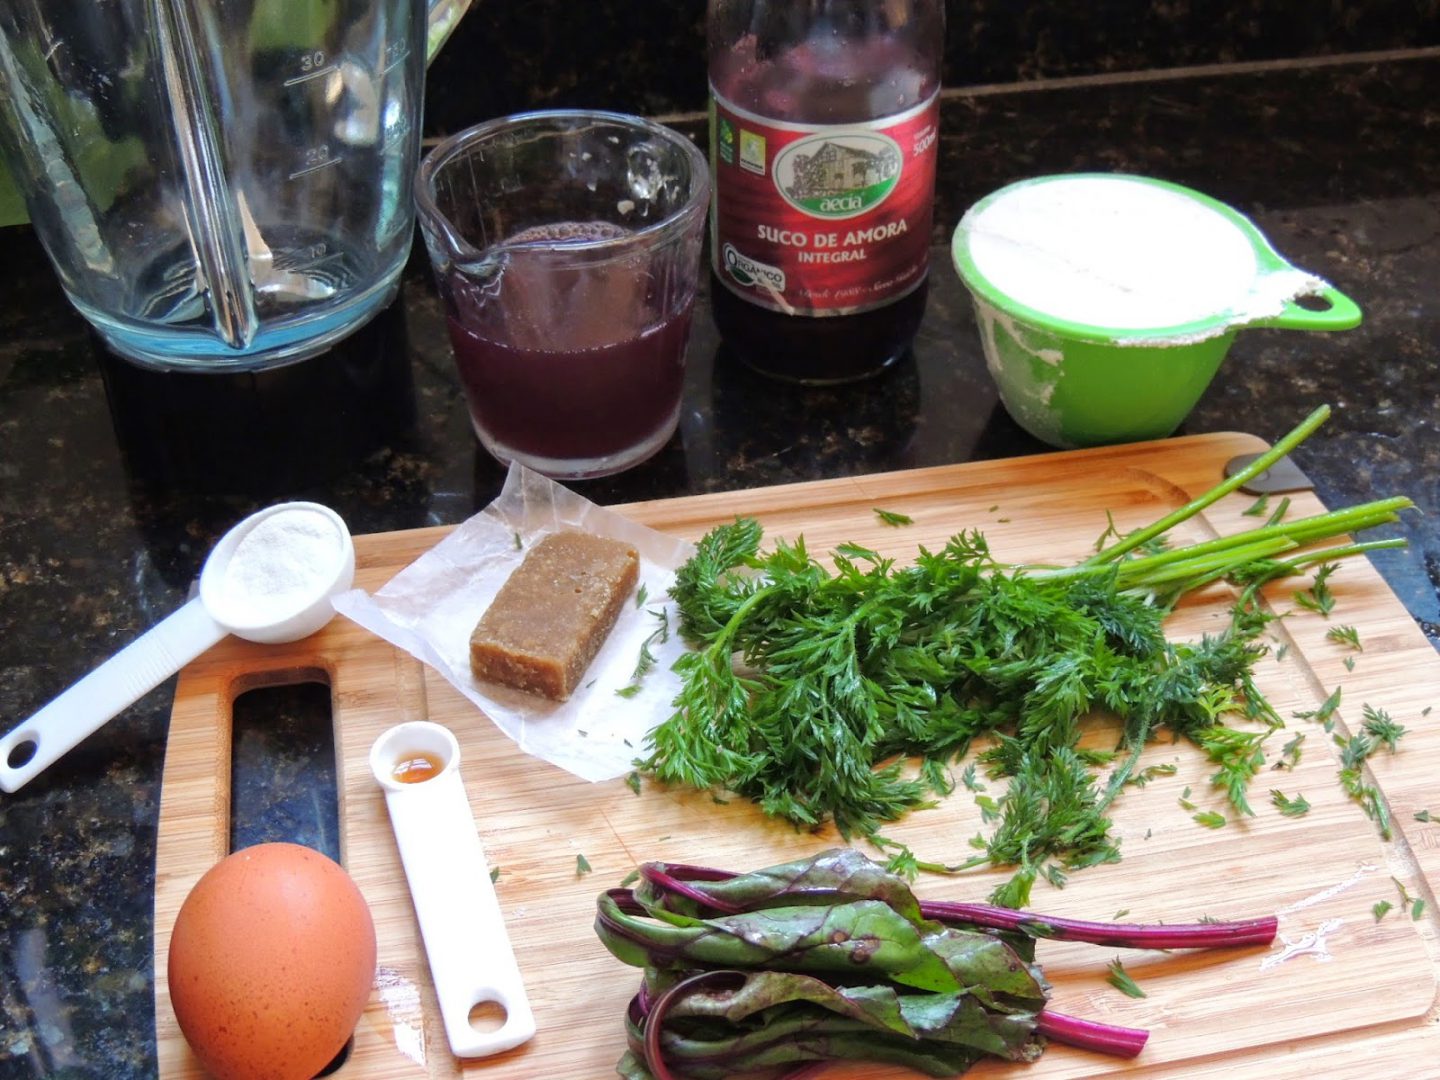 Bolo com legumes: foto de tábua de madeira com ingredientes e talos de verdura.